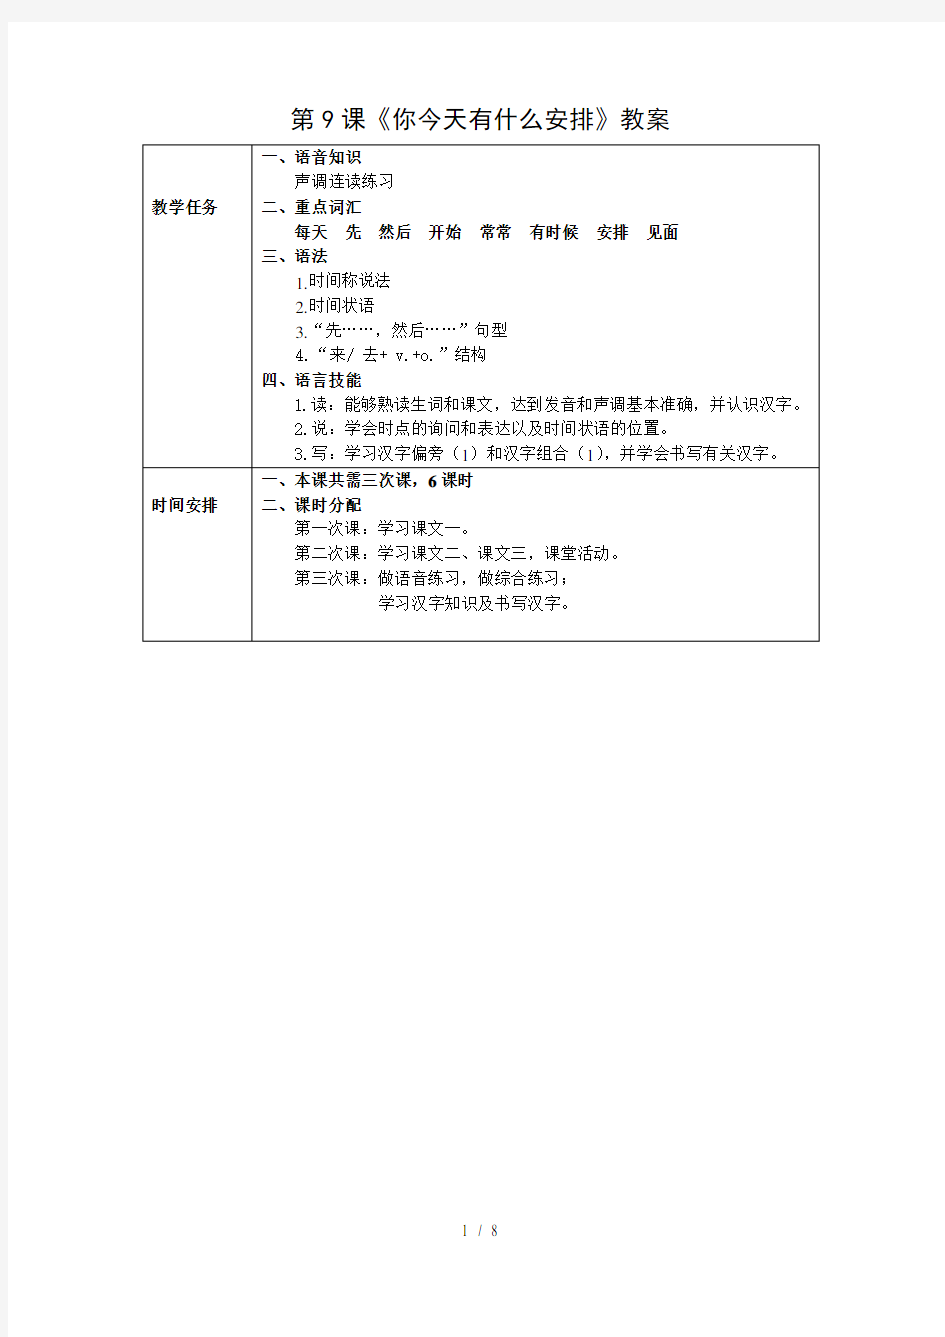 发展汉语初级综合1第9课教案